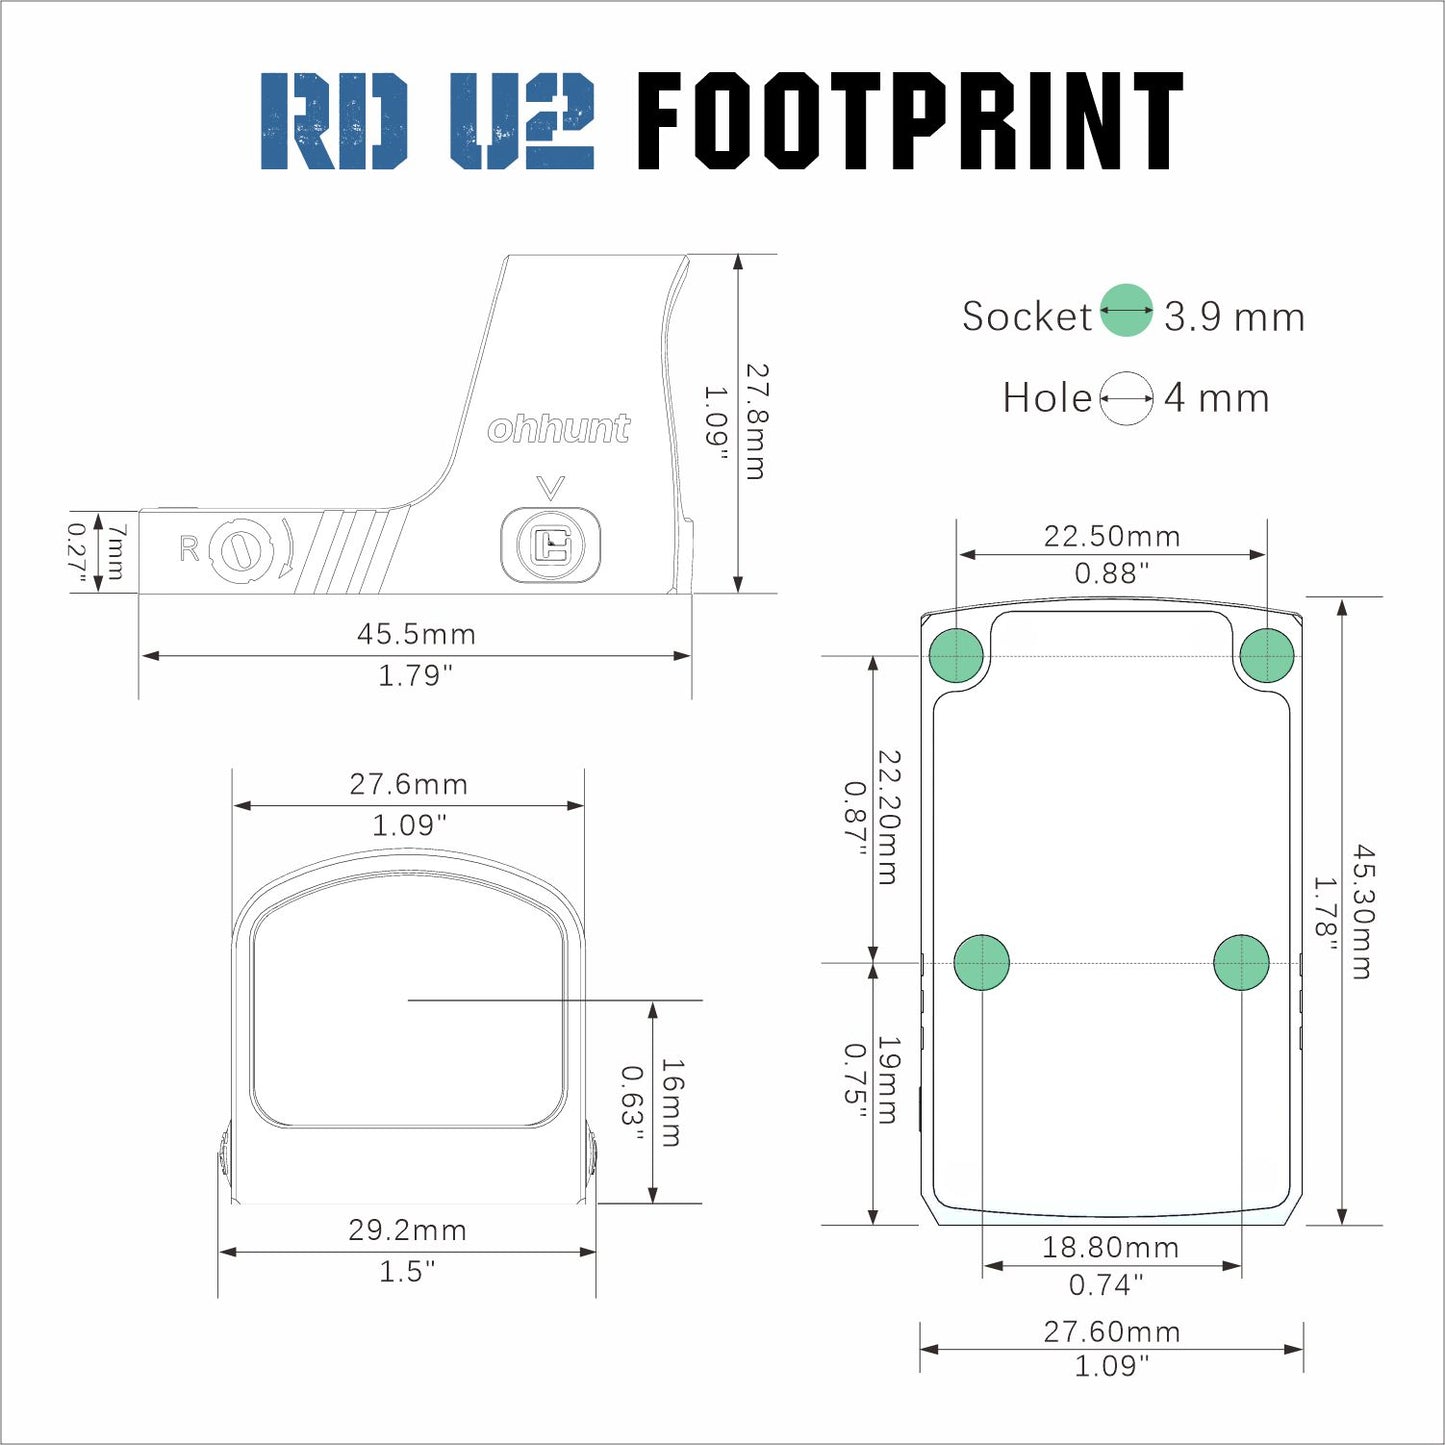 rmr footprint dimensions